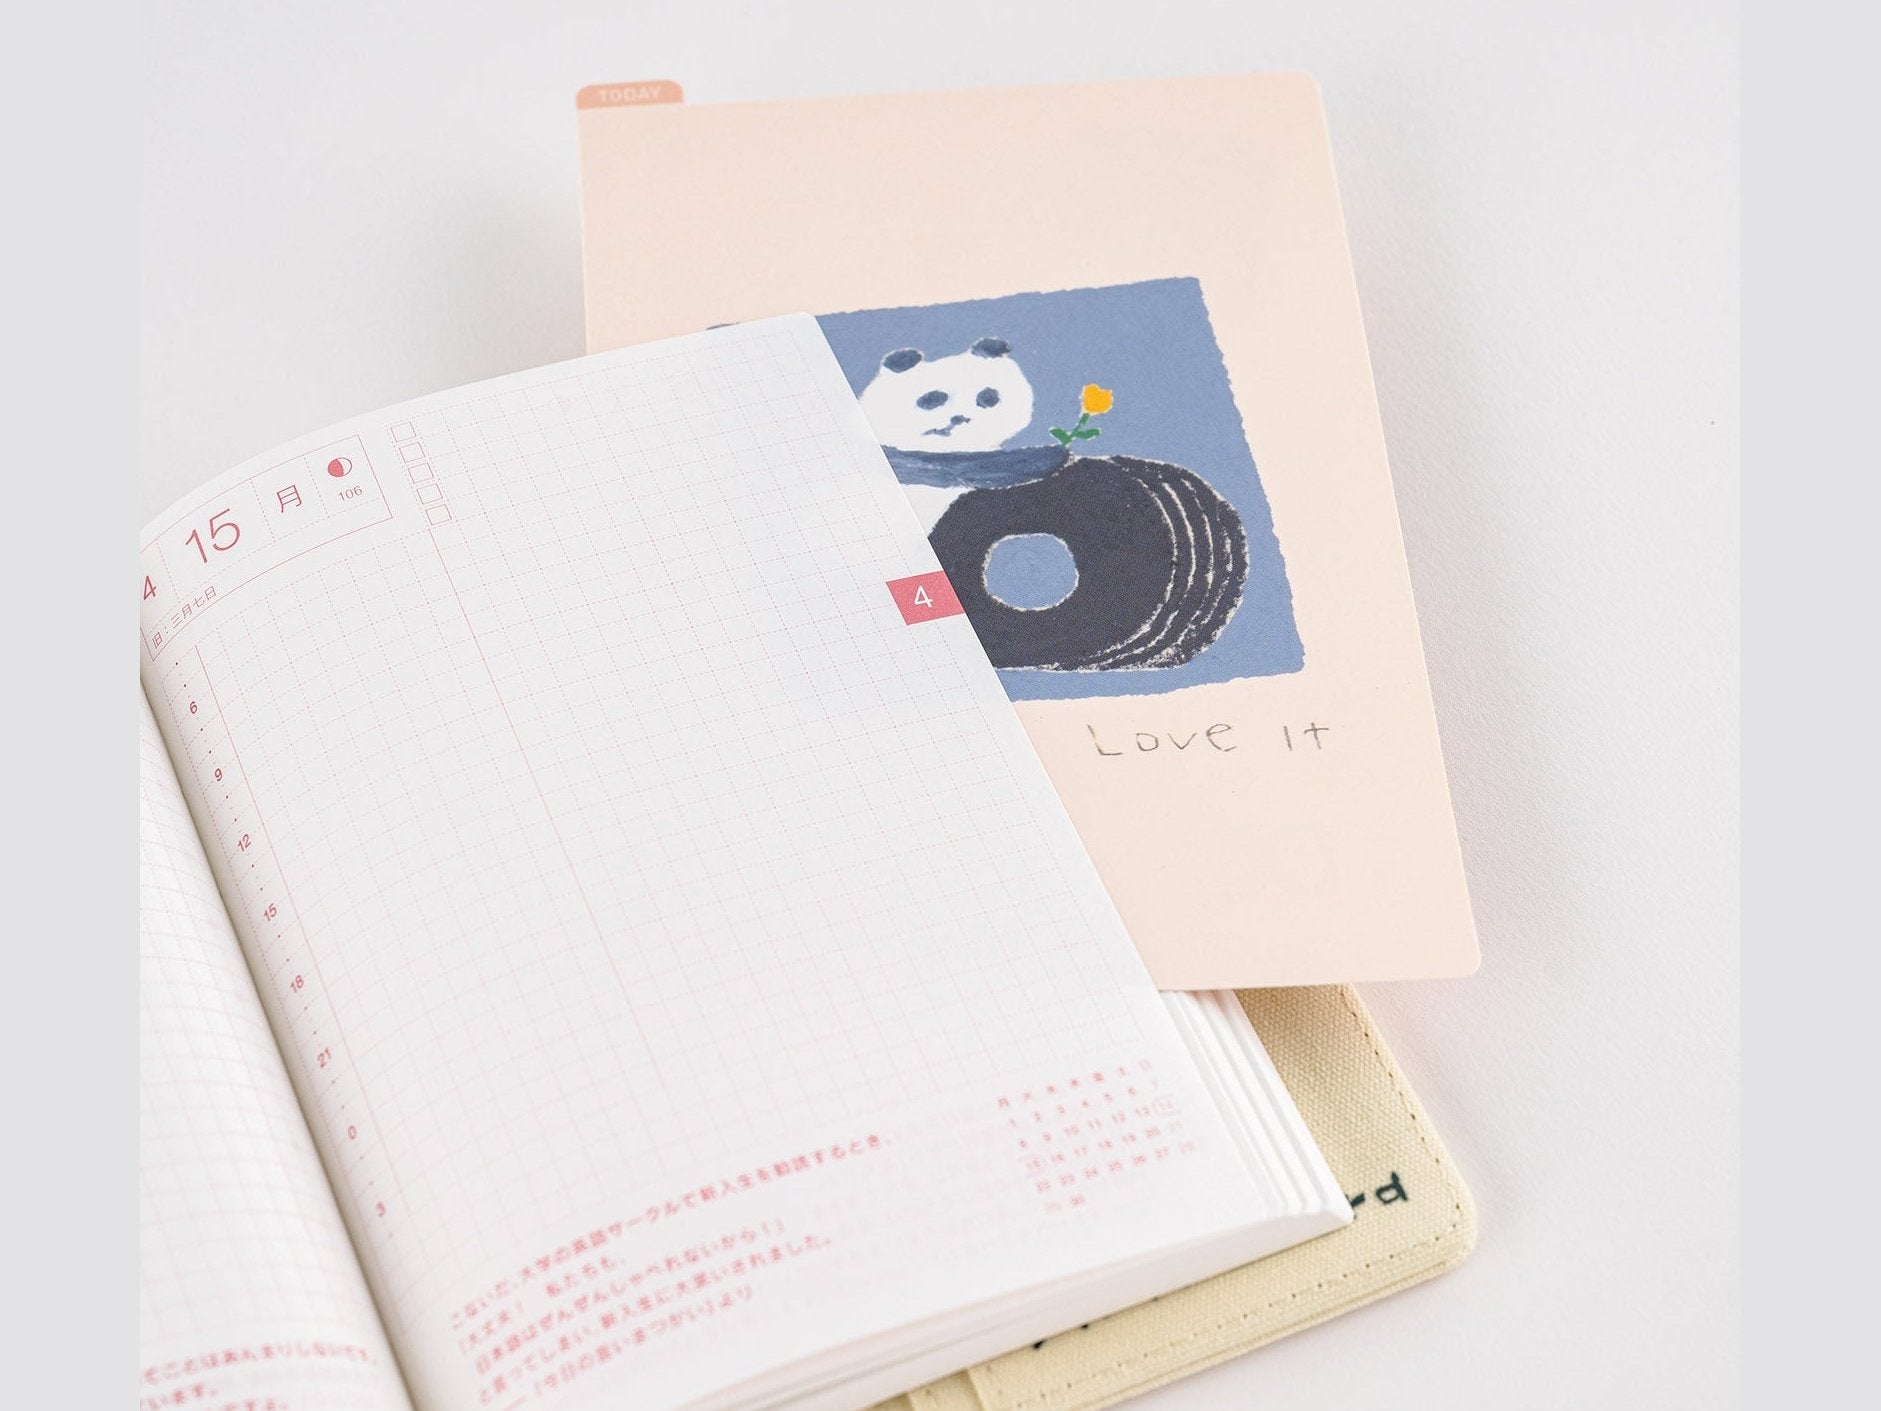 Hobonichi Techo Jin Kitamura: Hobonichi Pencil Board for A6 Size (Love it (Panda))